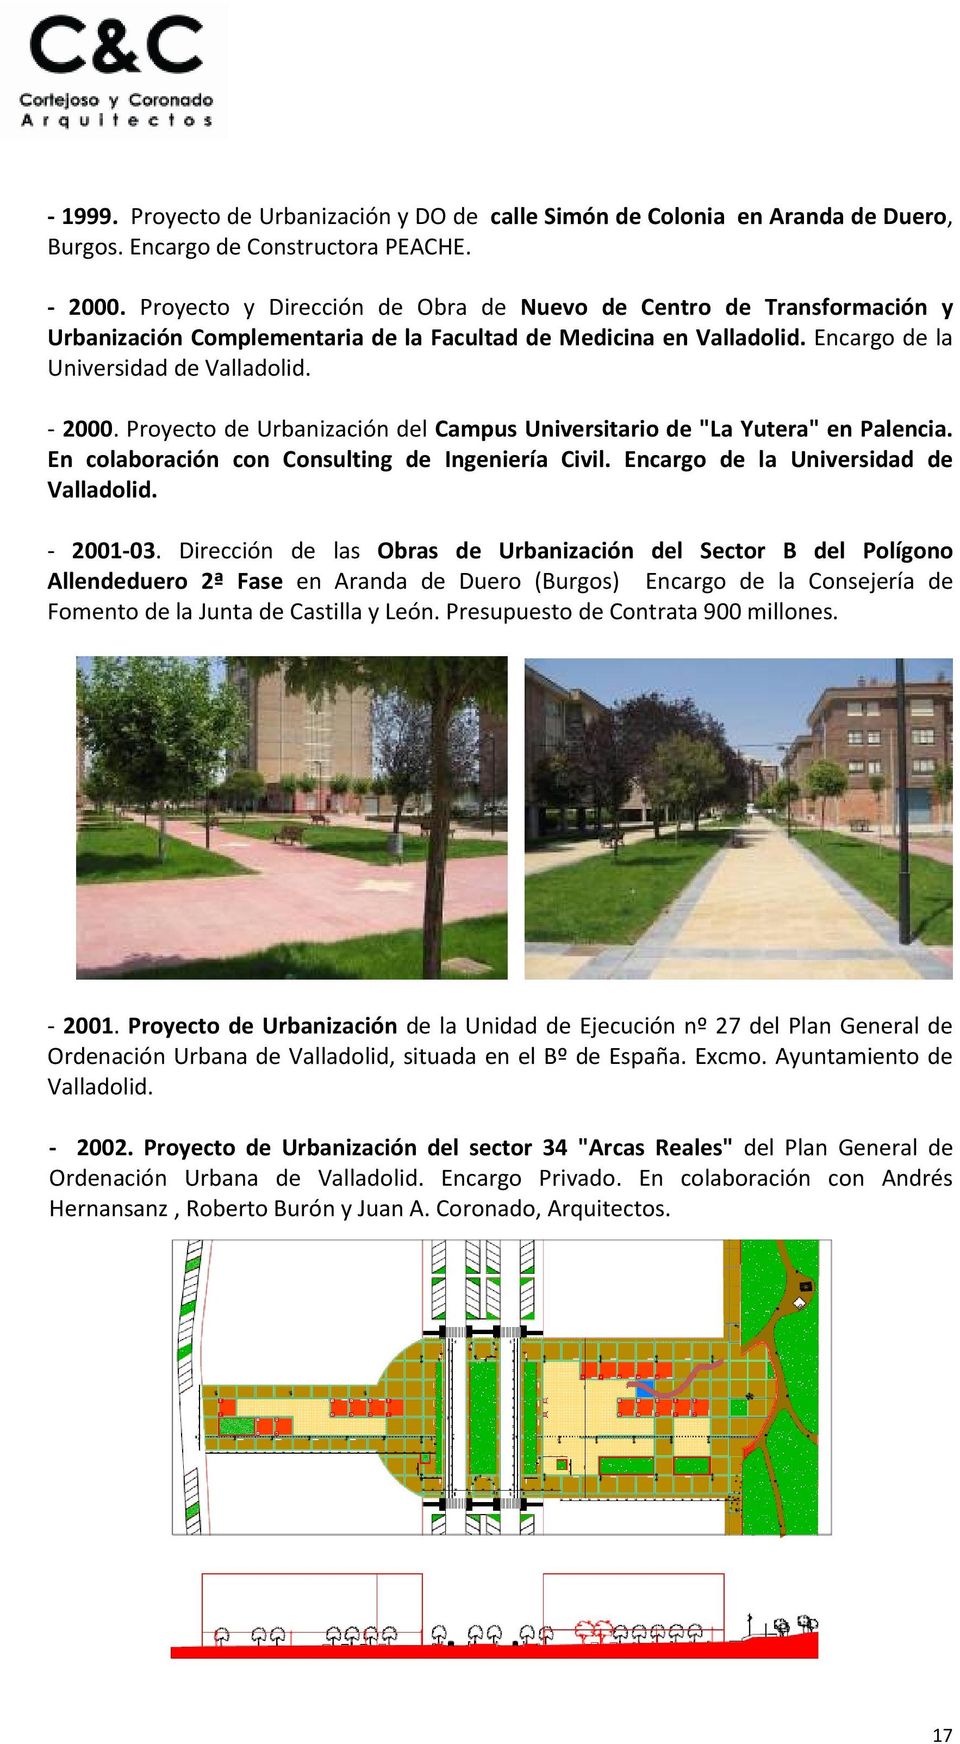 Proyecto de Urbanización del Campus Universitario de "La Yutera" en Palencia. En colaboración con Consulting de Ingeniería Civil. Encargo de la Universidad de Valladolid. 2001 03.